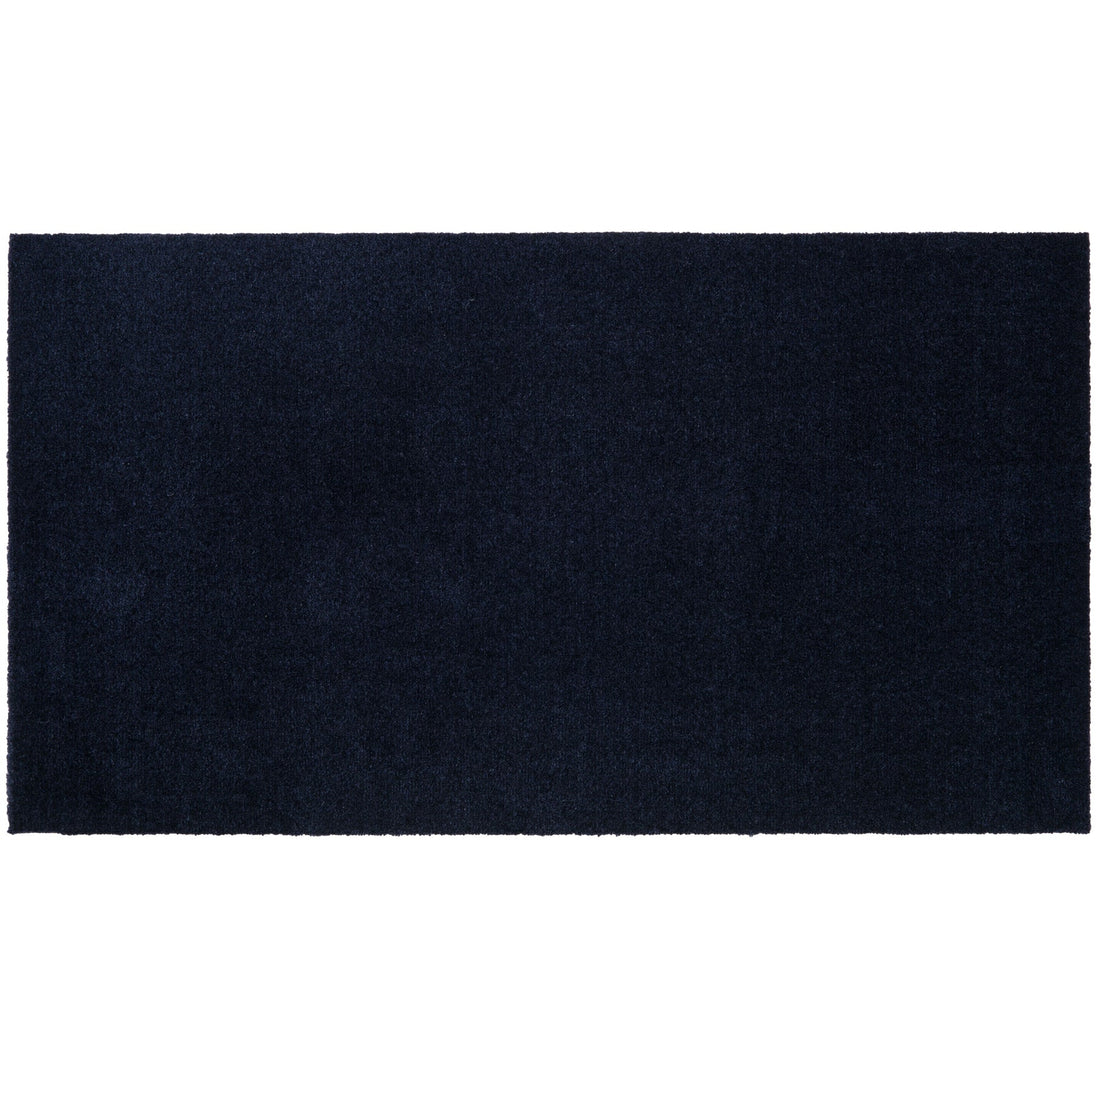 Bodenmatte 67 x 120 cm - Uni Farbe/Blau